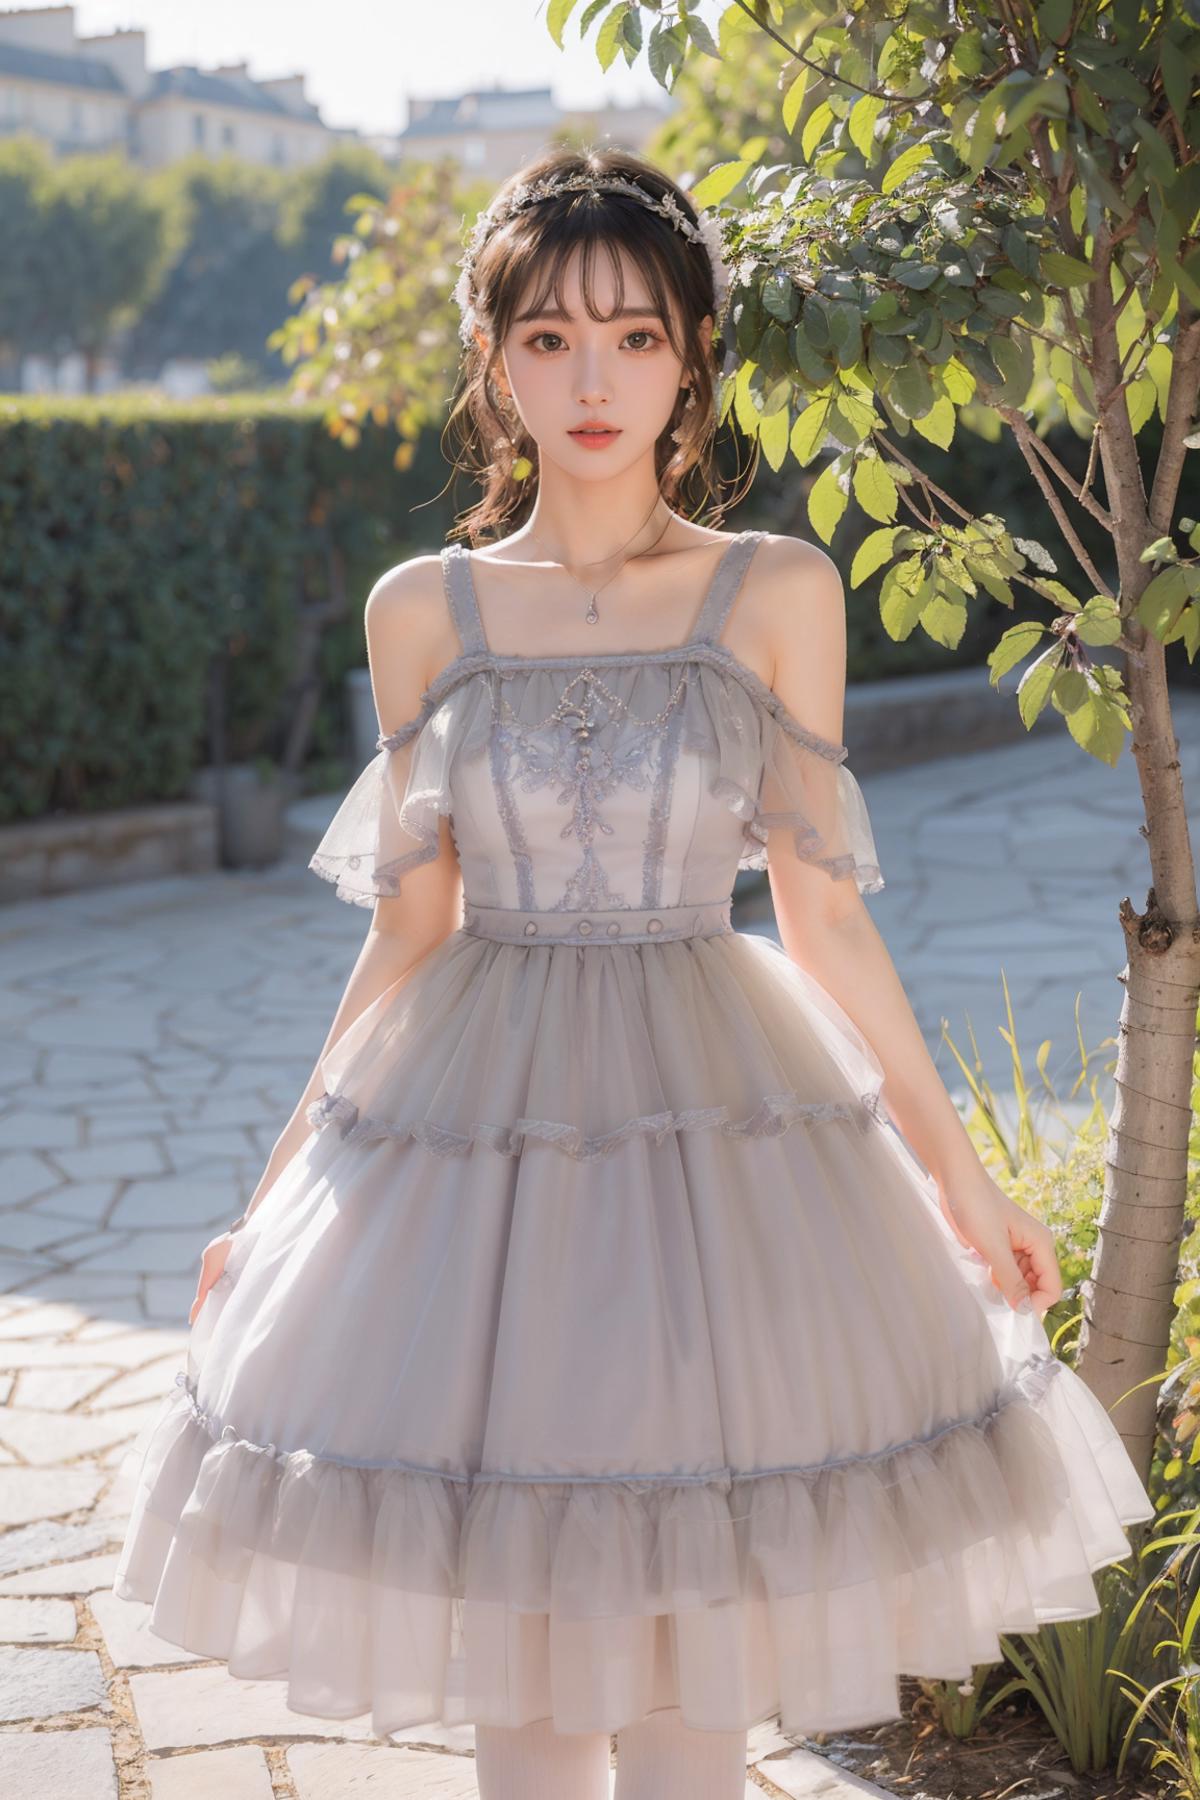 【去野餐】Dress No.13 Grey Dress image by pizzagirl